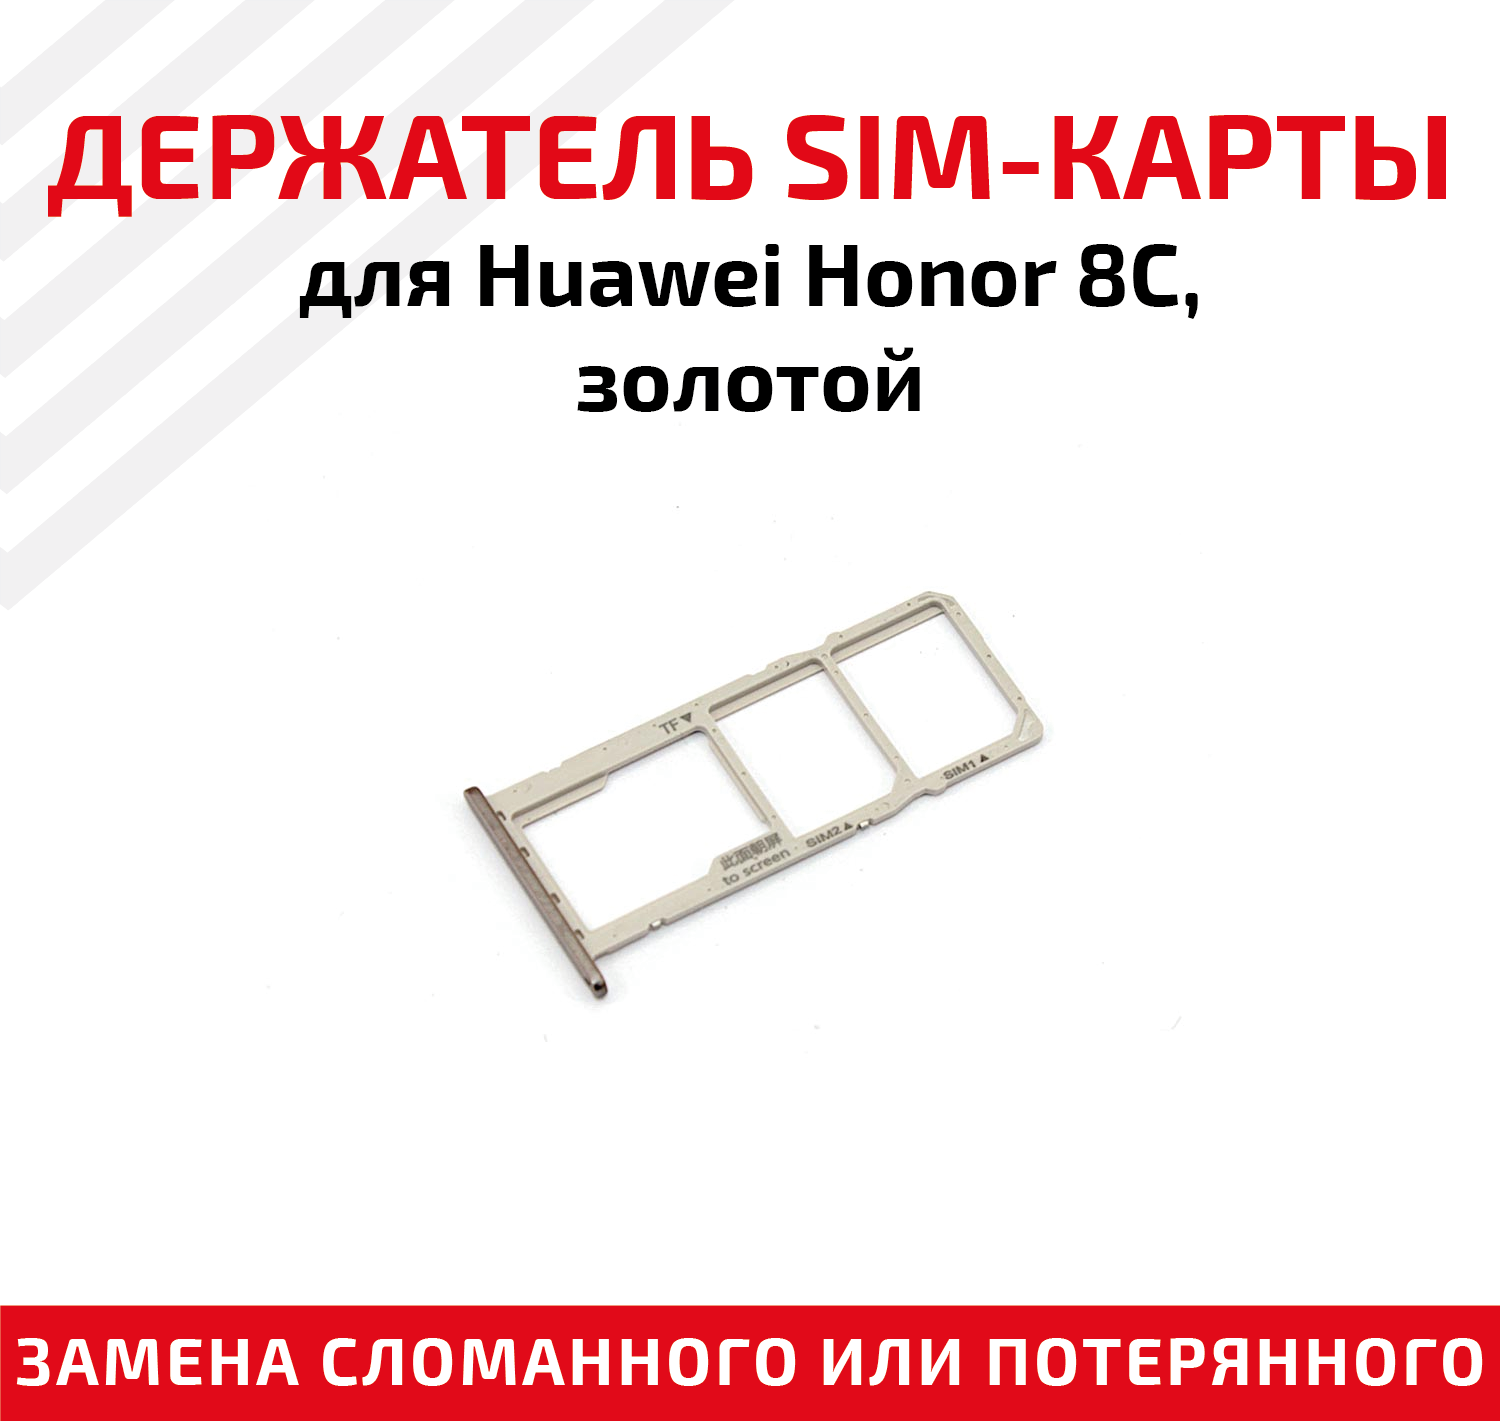 Лоток (держатель контейнер слот) SIM-карты для мобильного телефона (смартфона) Huawei Honor 8C золотой